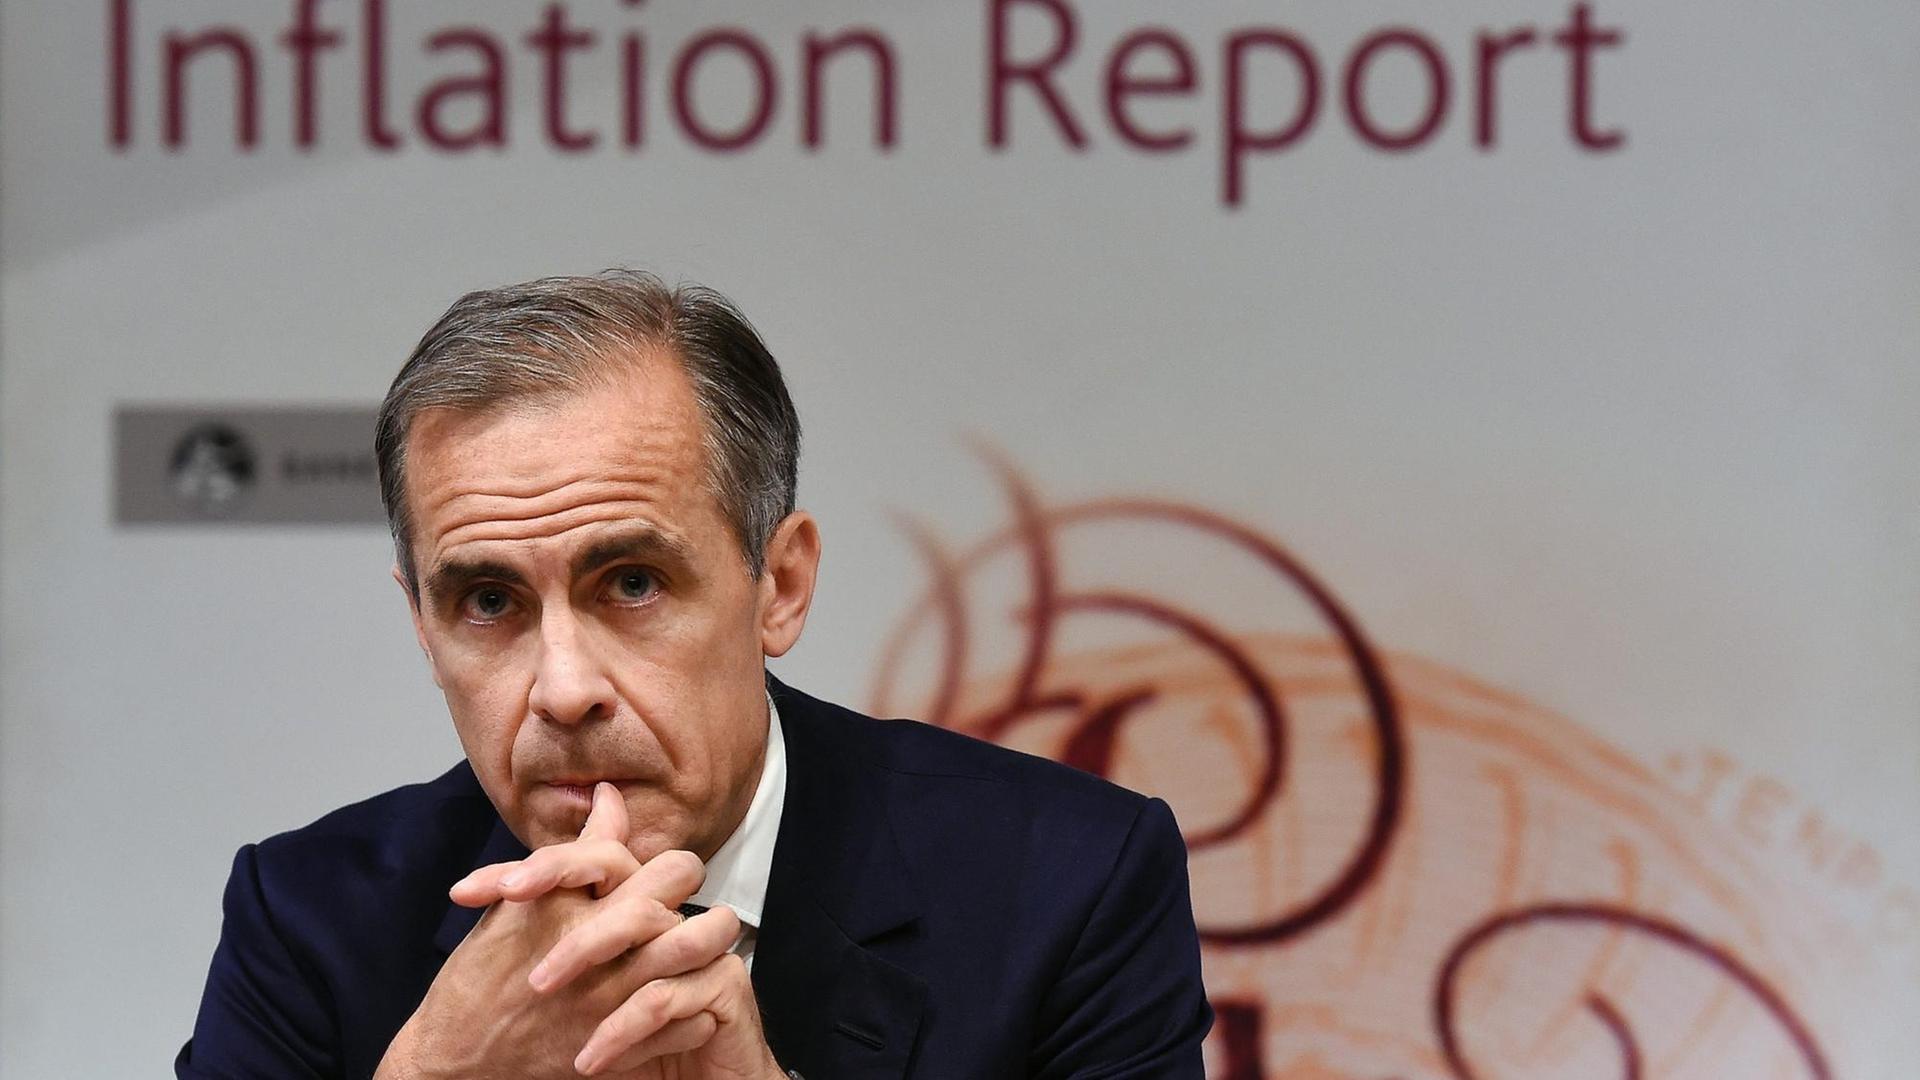 Der Chef der Bank of England, Mark Carney.